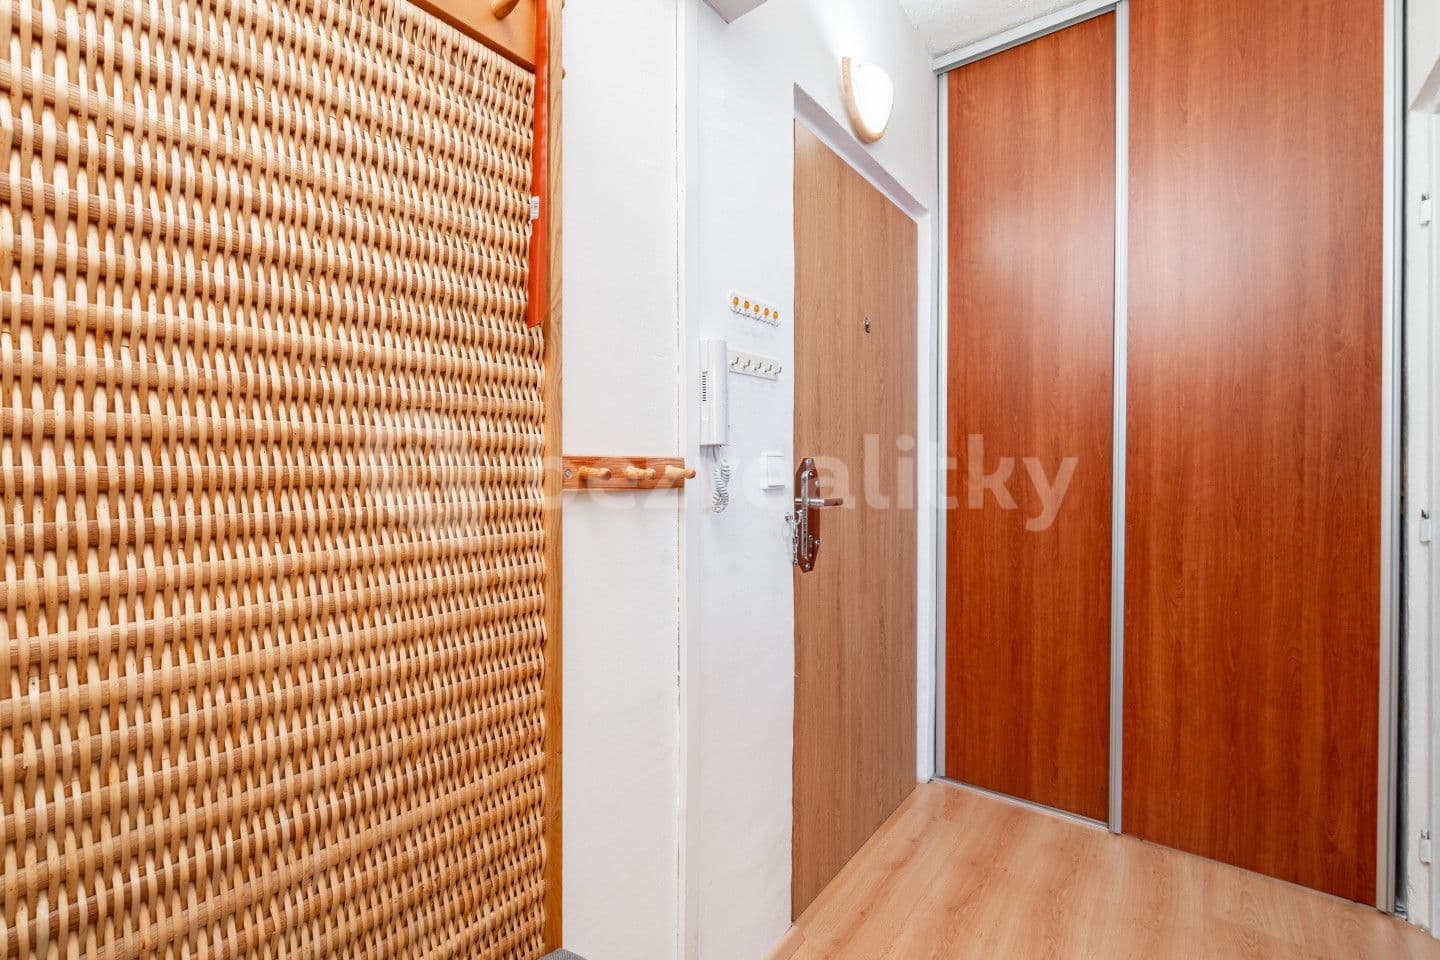 3 bedroom flat for sale, 77 m², Okružní, Třebíč, Vysočina Region